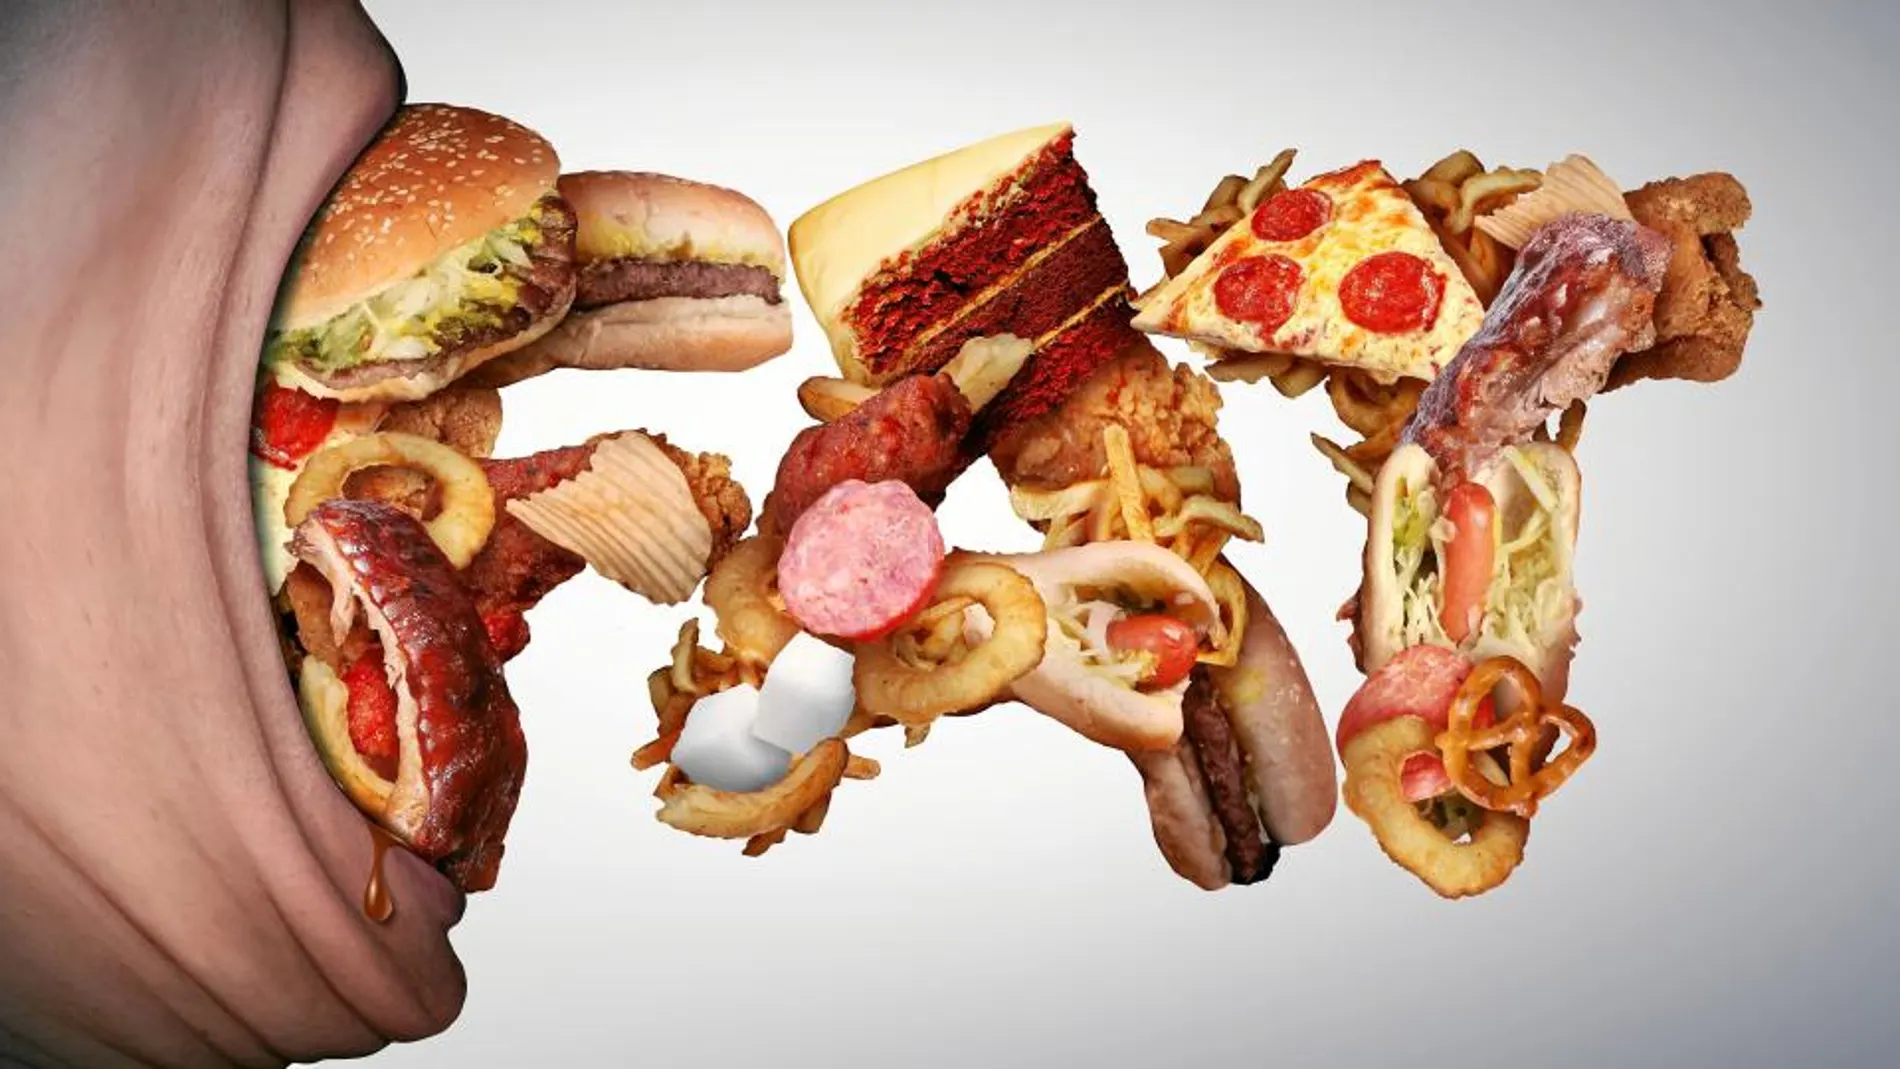 La ingesta de comidas azucaradas o con mucha grasa activa el mismo circuito cerebral de recompensa y placer que las drogas